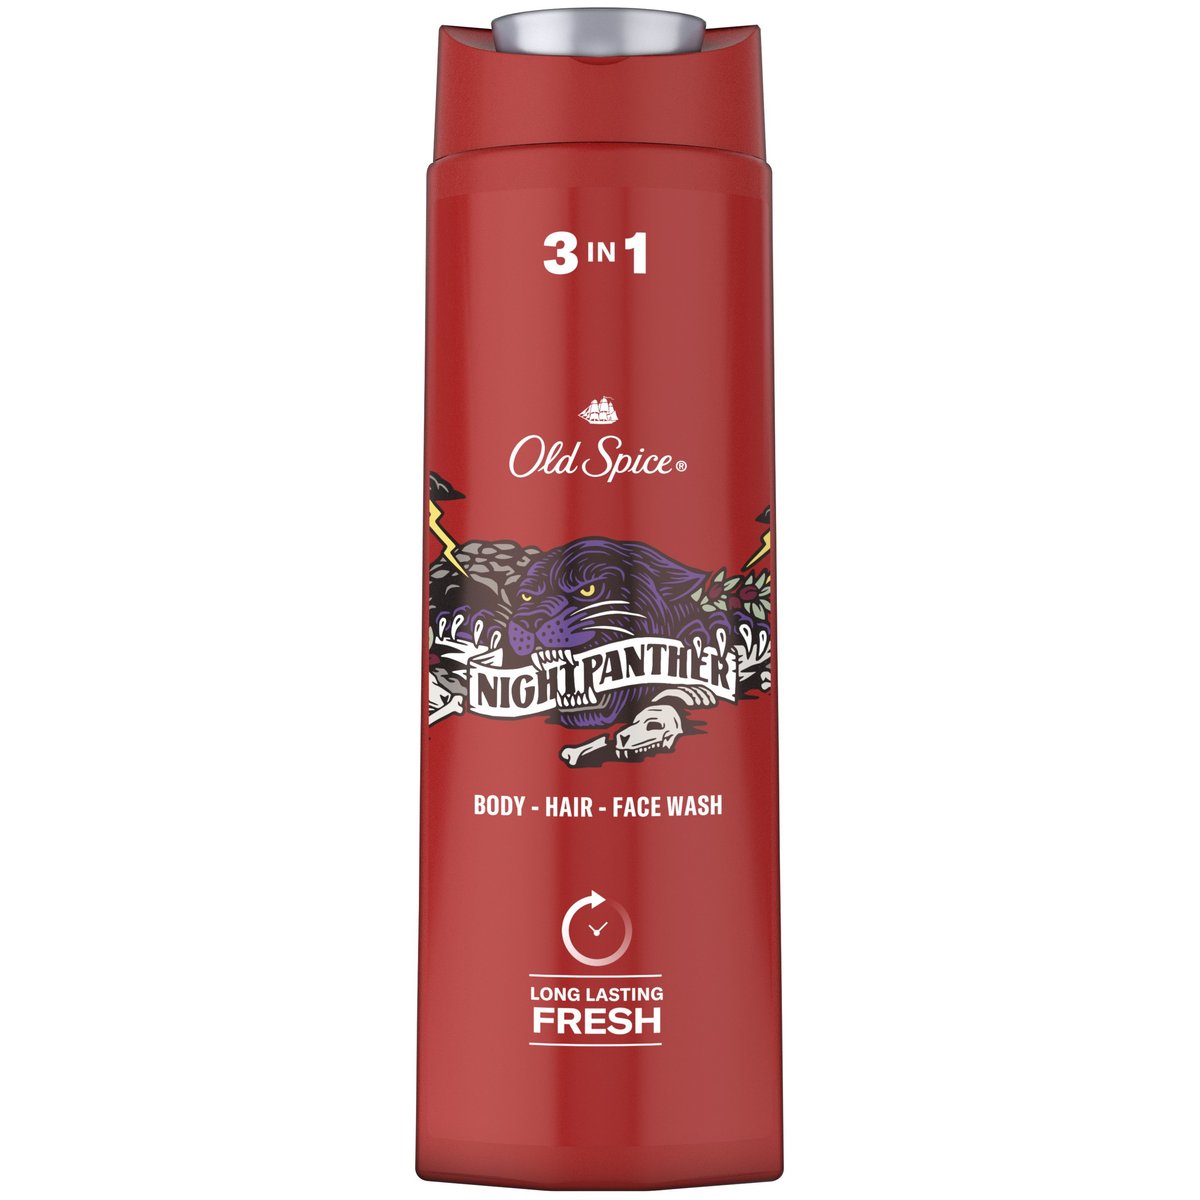 Old Spice Nightpanther 3v1 sprchový gel a šampon pro muže s tóny citrusů, levandule a máty